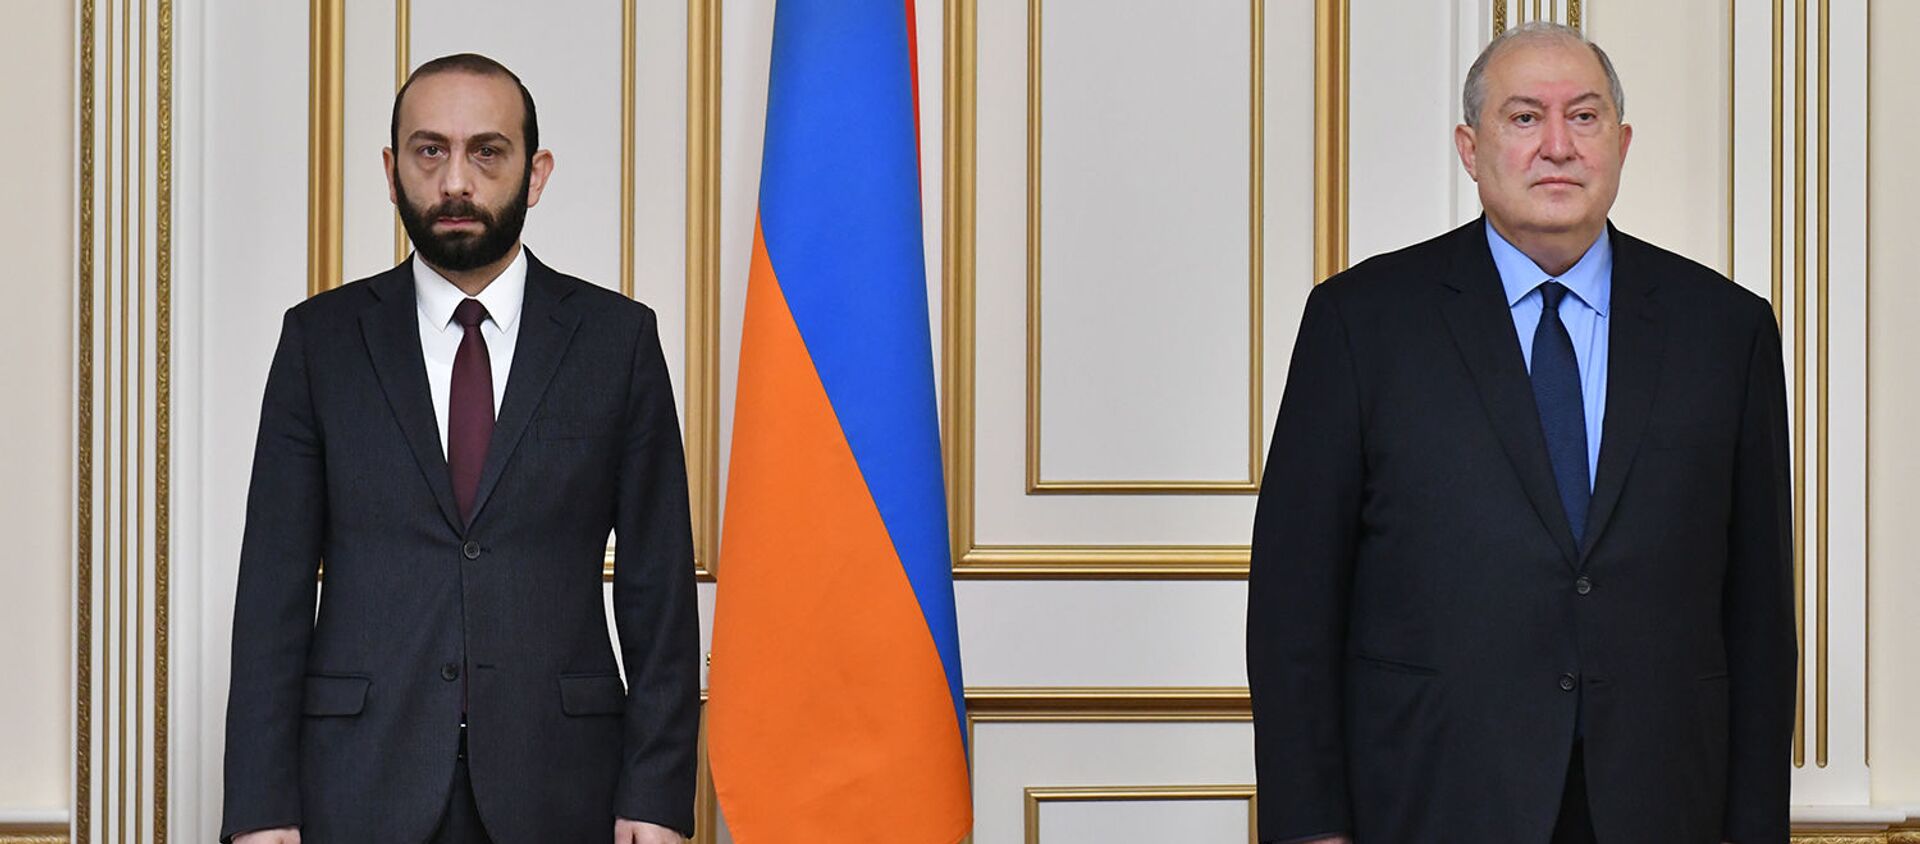 Президент Армен Саркисян со спикером Парламента Араратом Мирзояном - Sputnik Армения, 1920, 26.02.2021